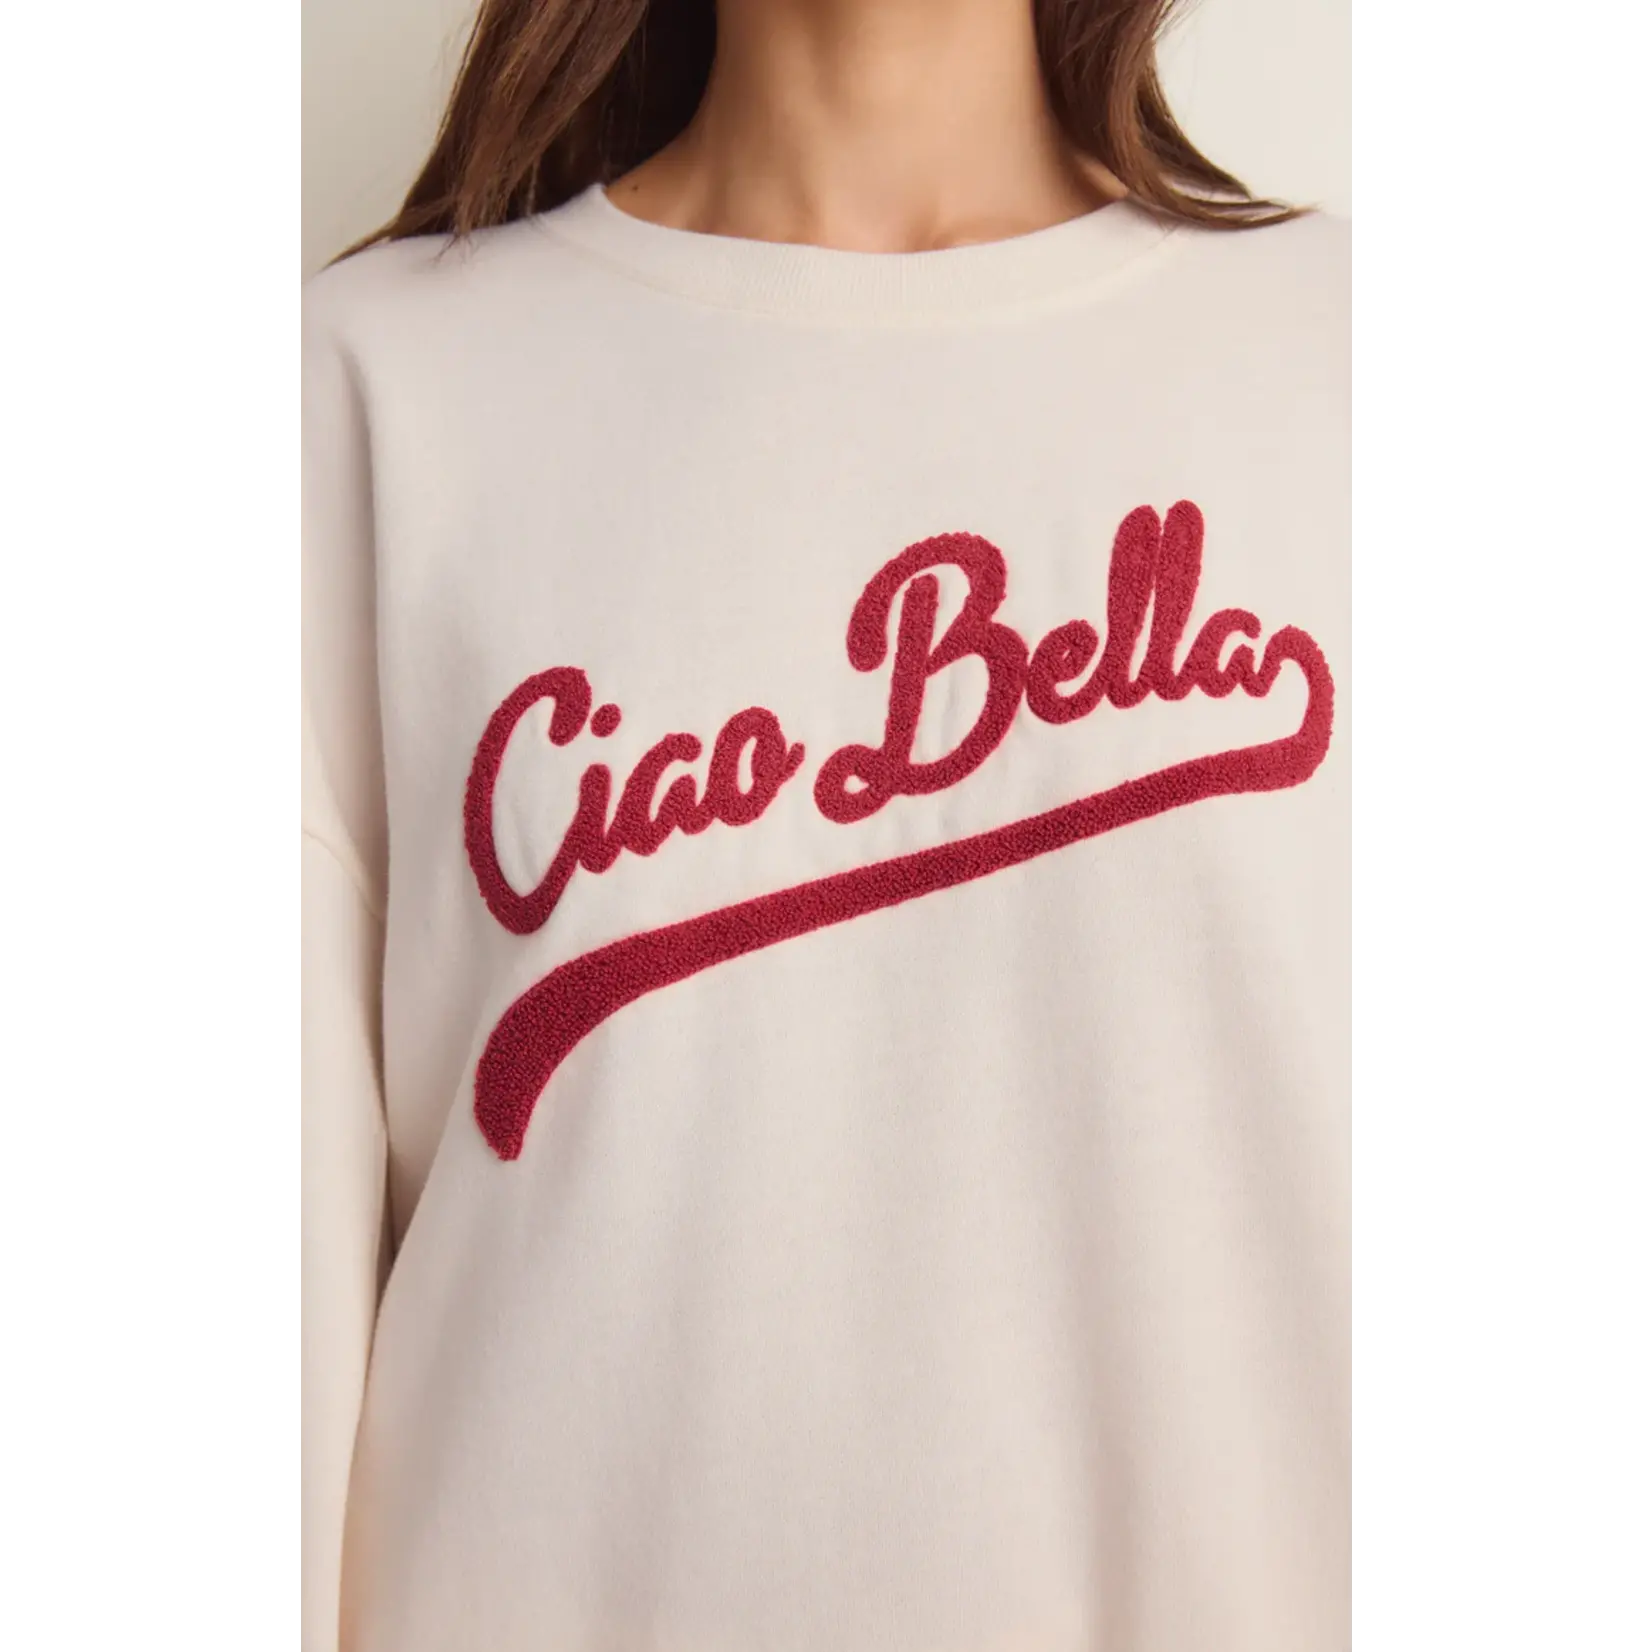 Ciao Bella Sweatshirt – Anchora Bella Boutique